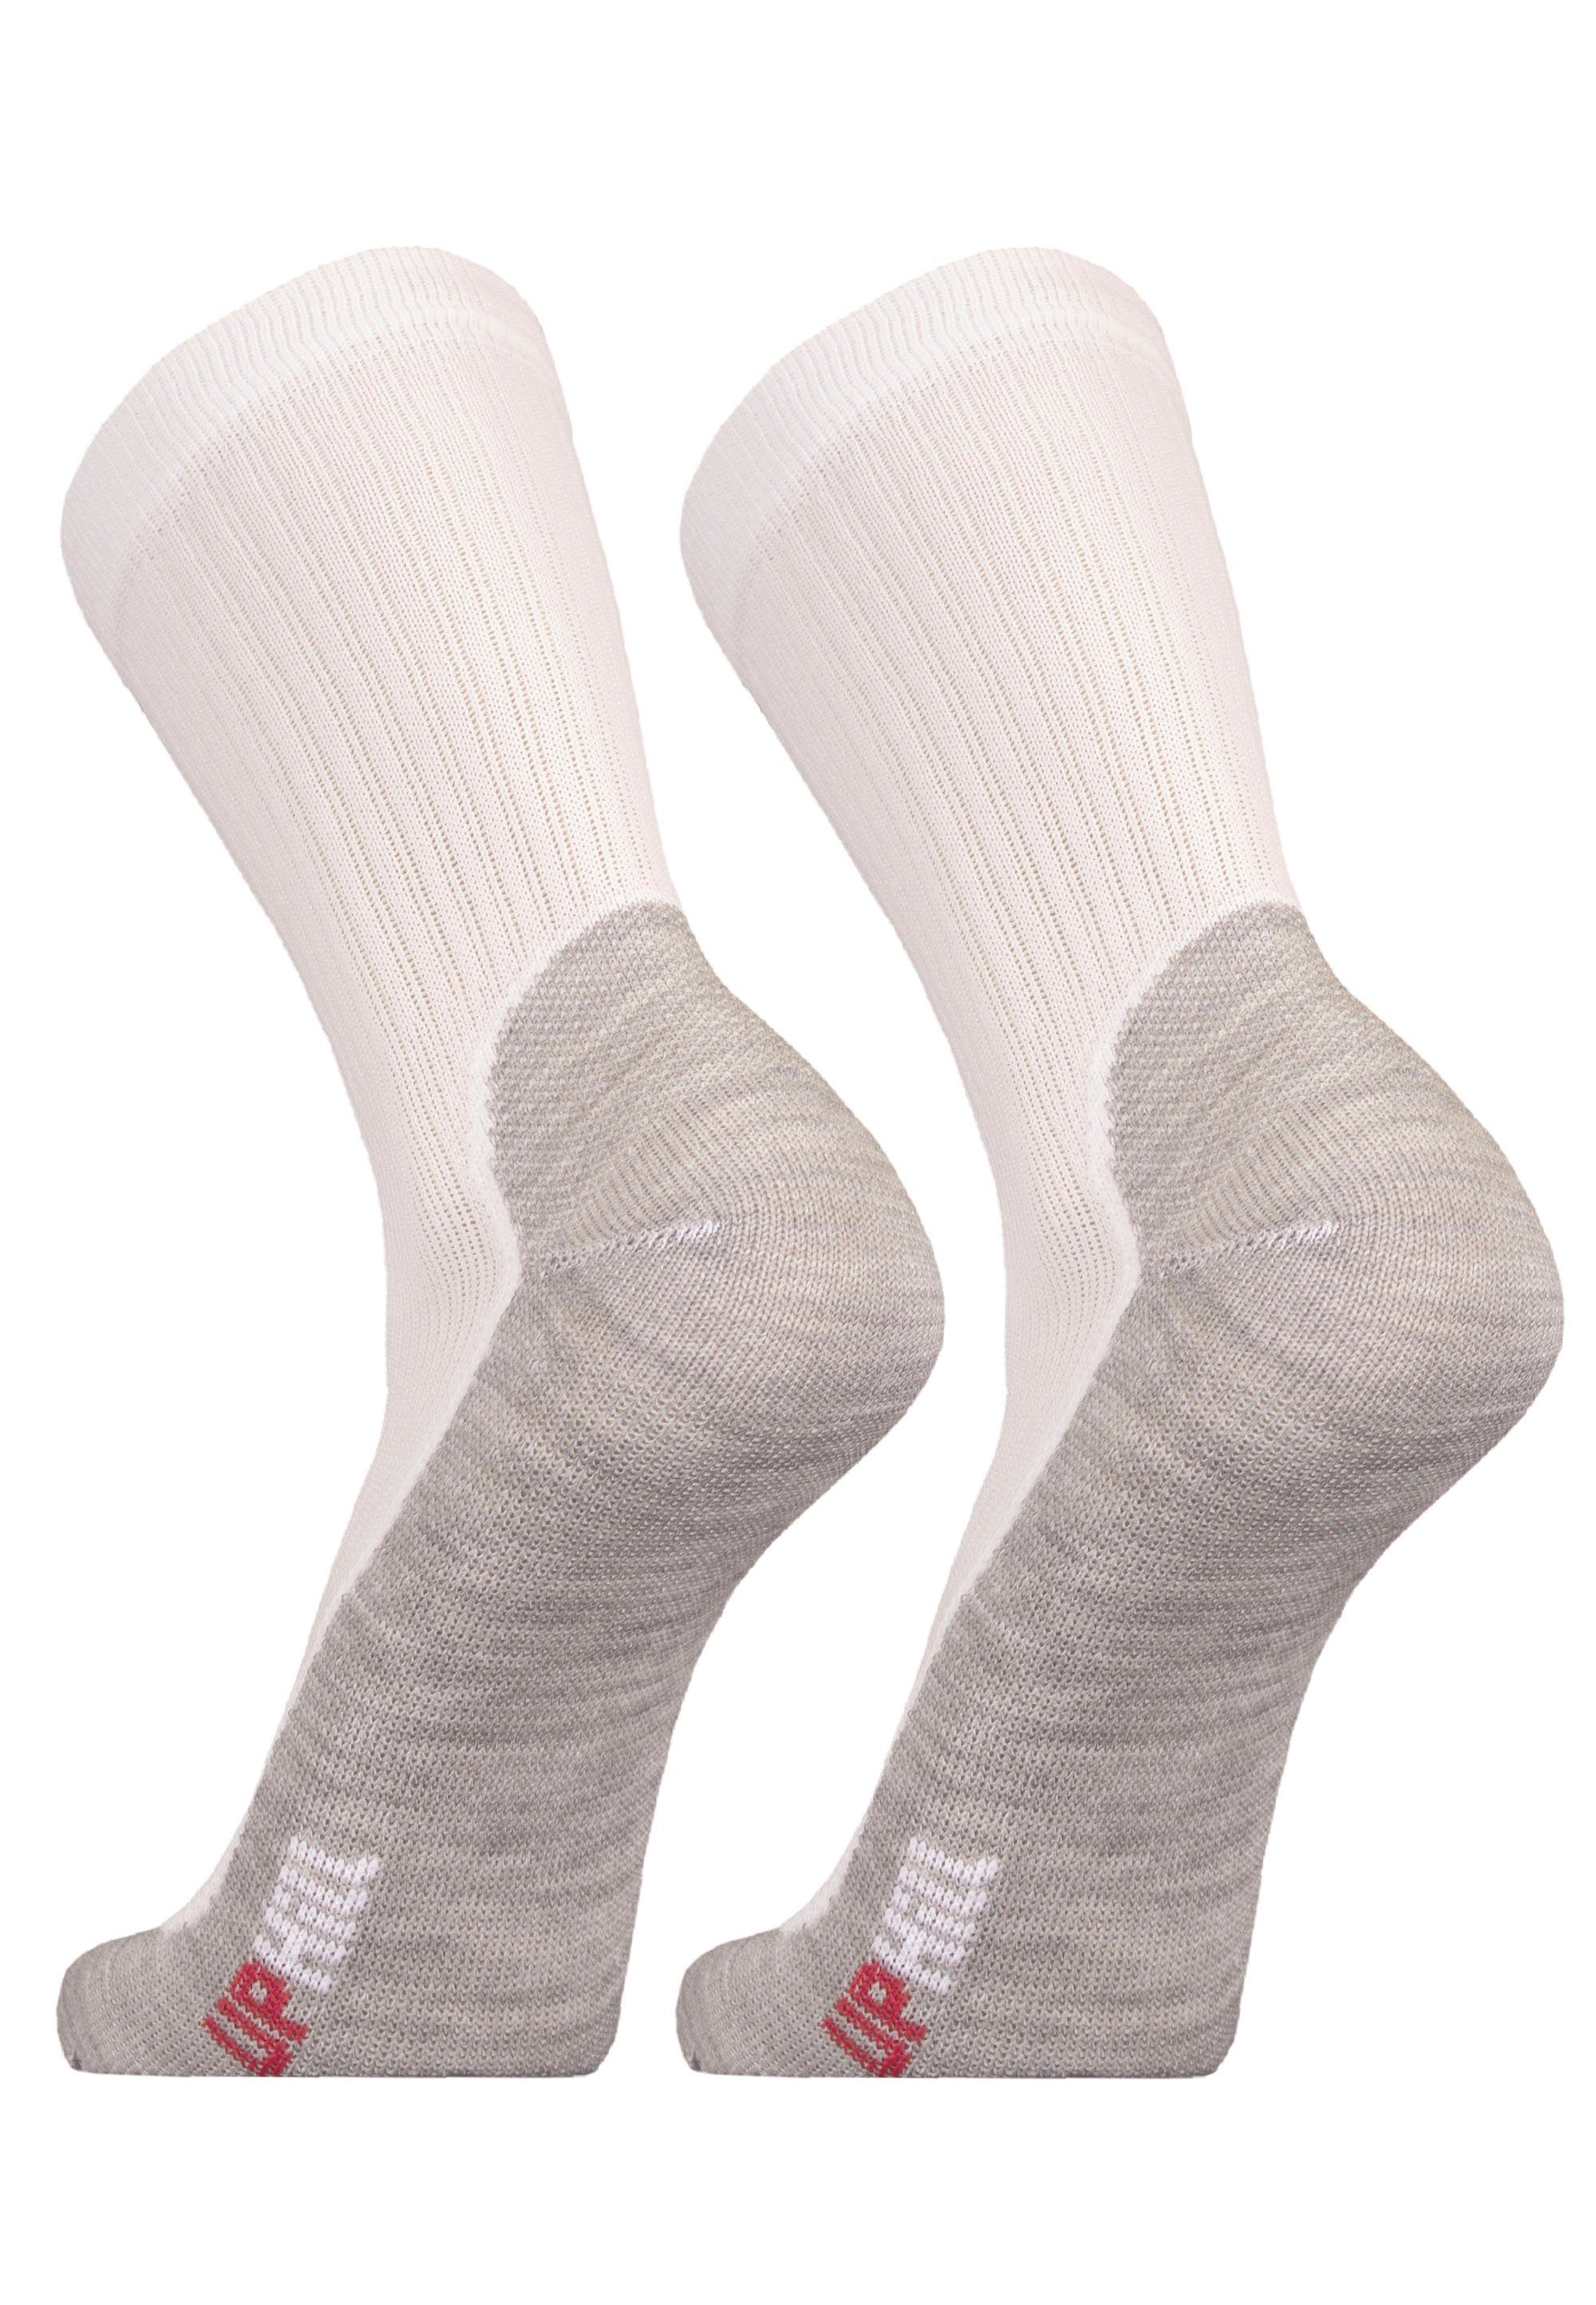 UphillSport Socken WINTER XC 2er mit Funktion weiß-grau atmungsaktiver Pack (2-Paar)